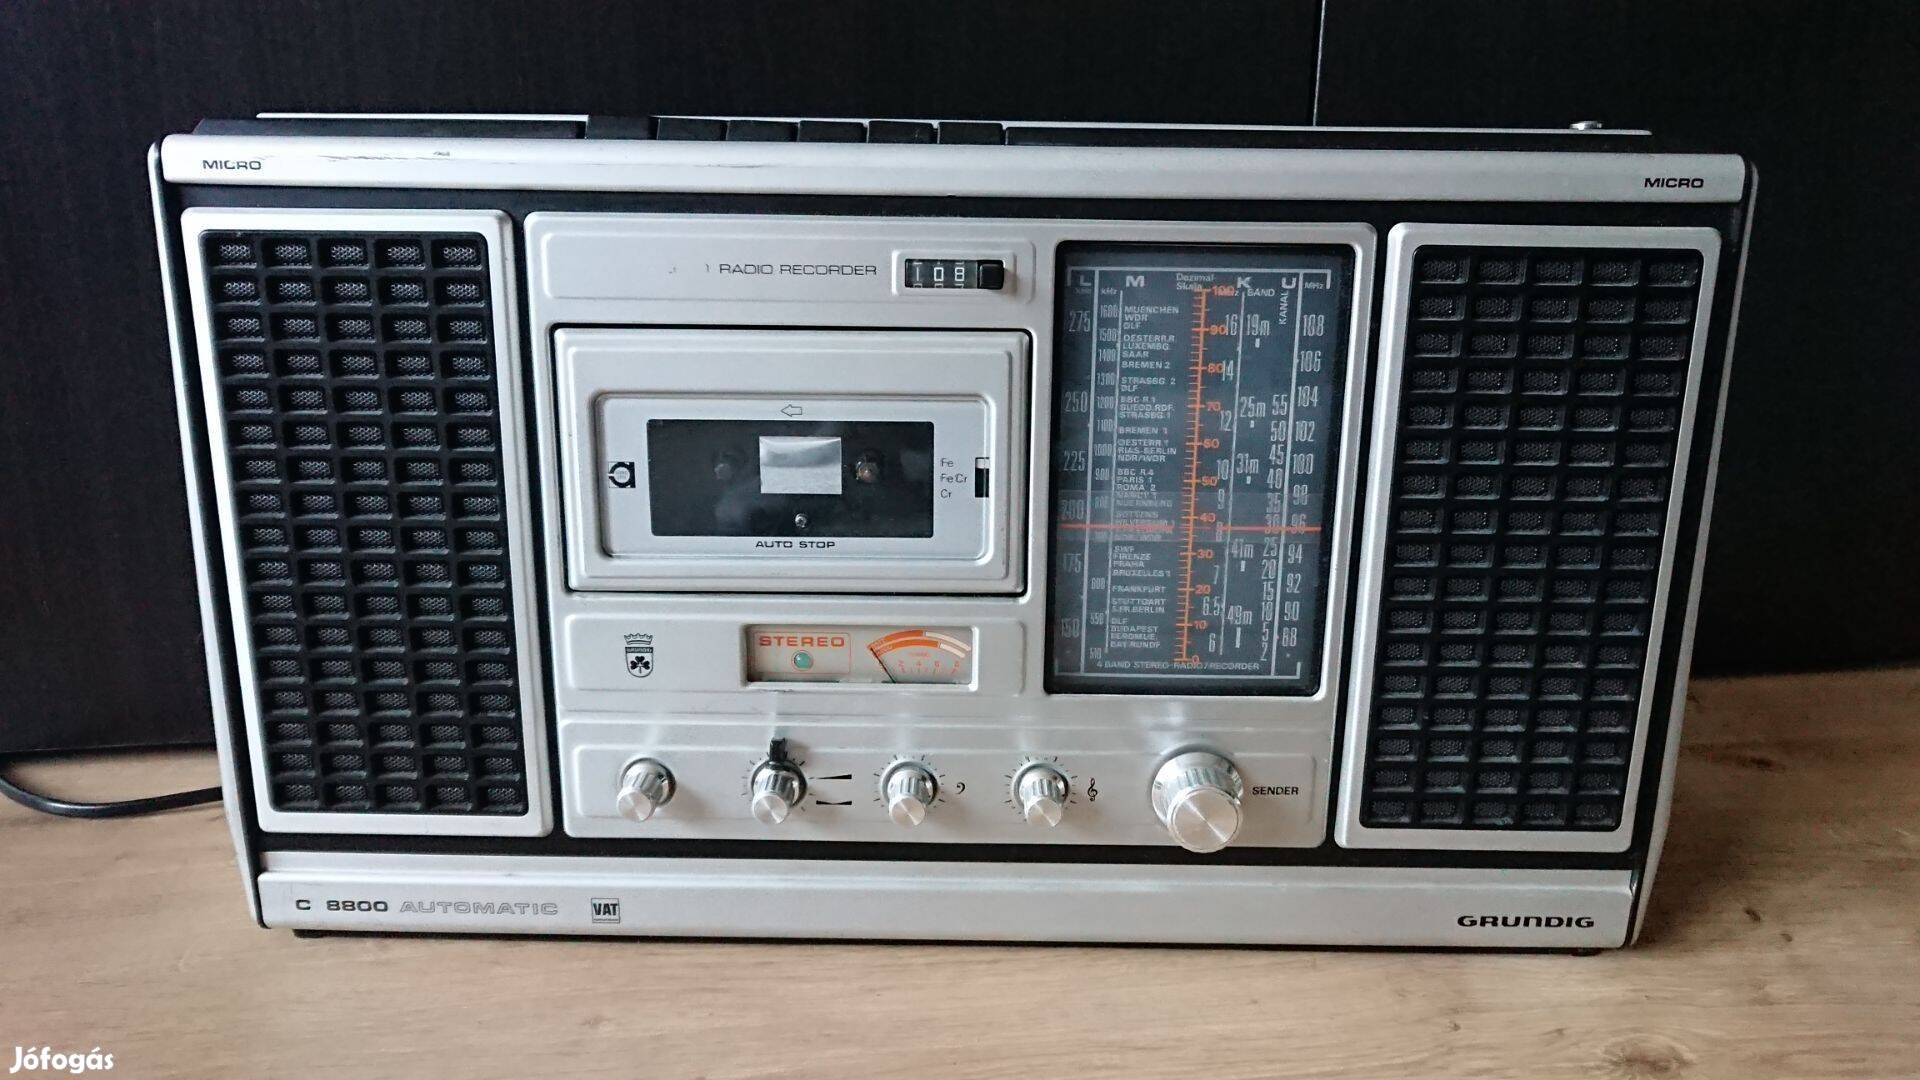 Működő Grundig C8800 Automatic retro boombox rádió kazettás magnó